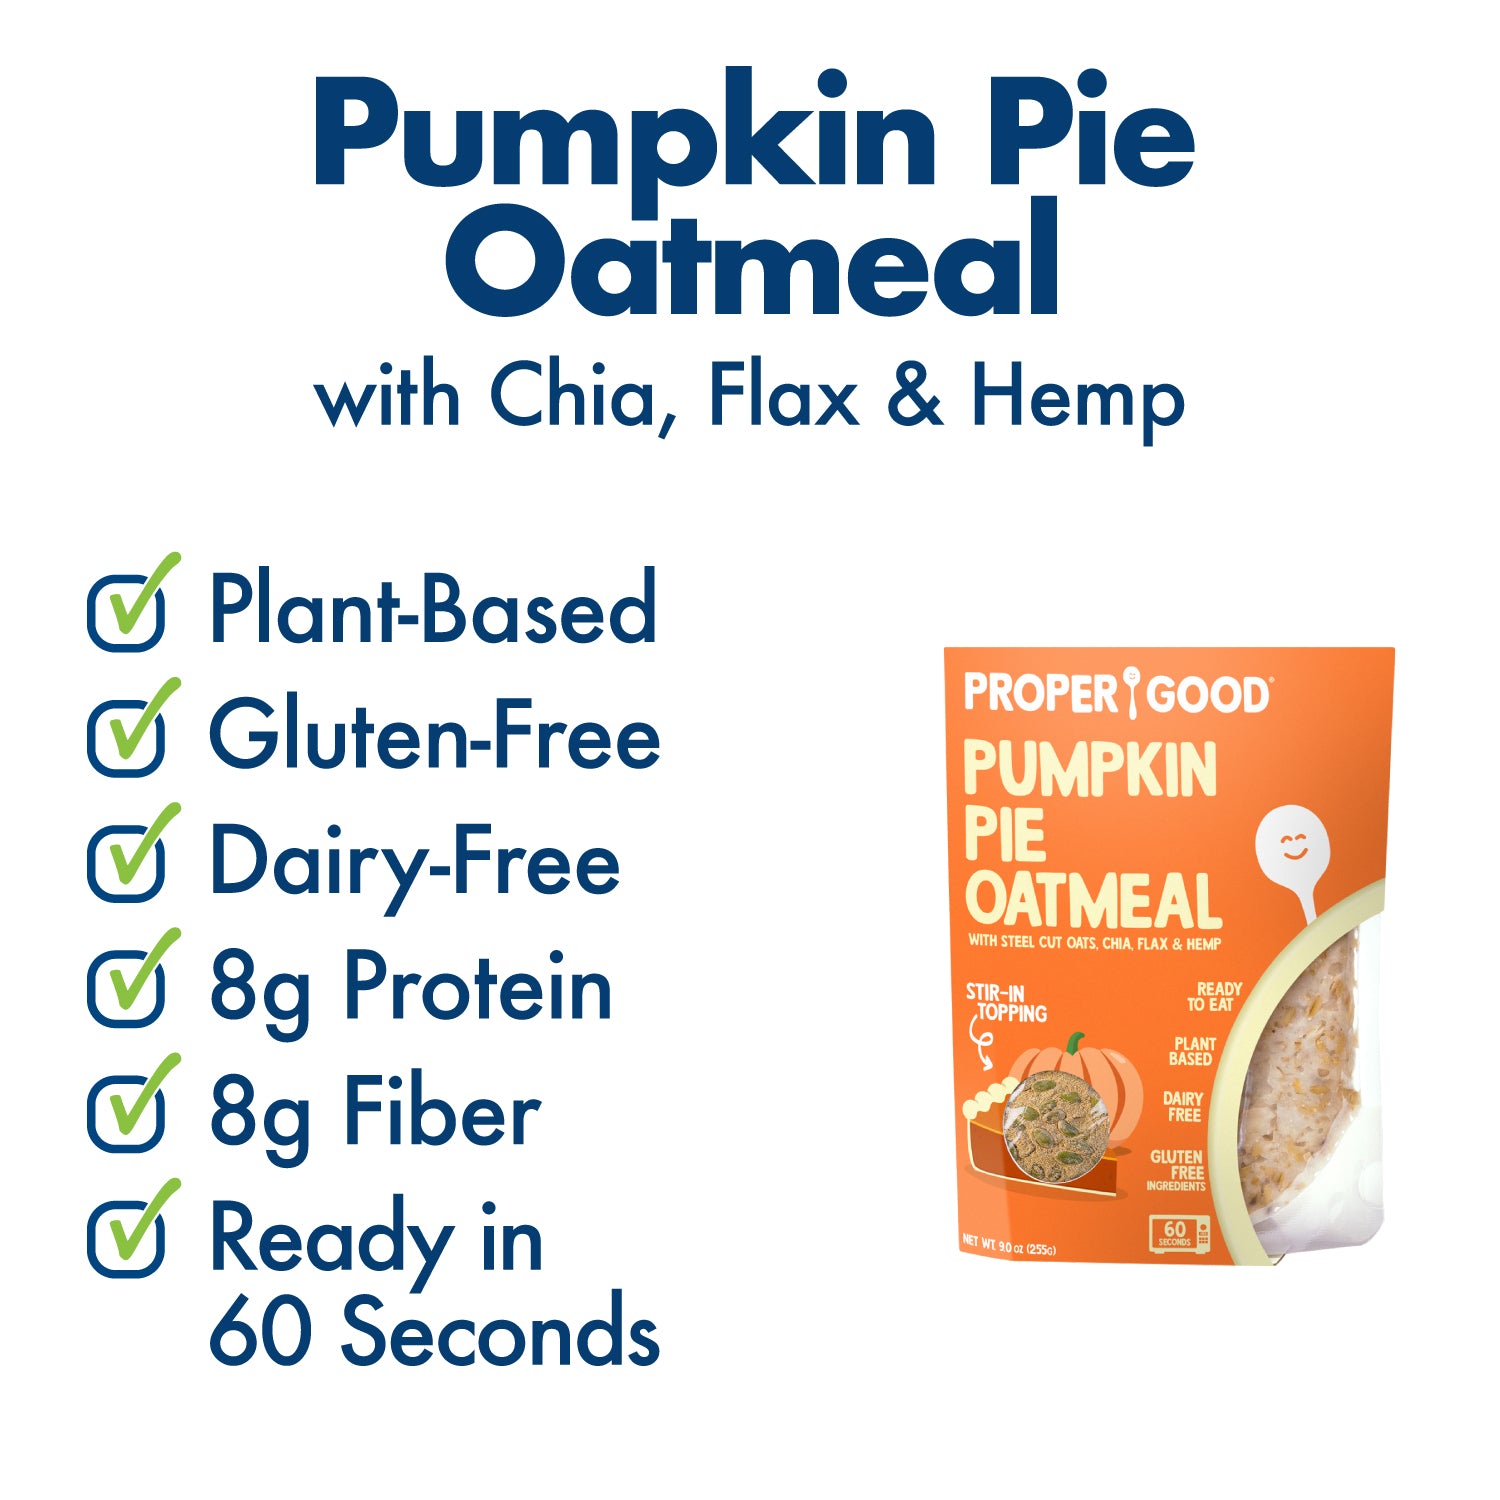 Pumpkin Pie Oatmeal Benefits - Eat Proper Good